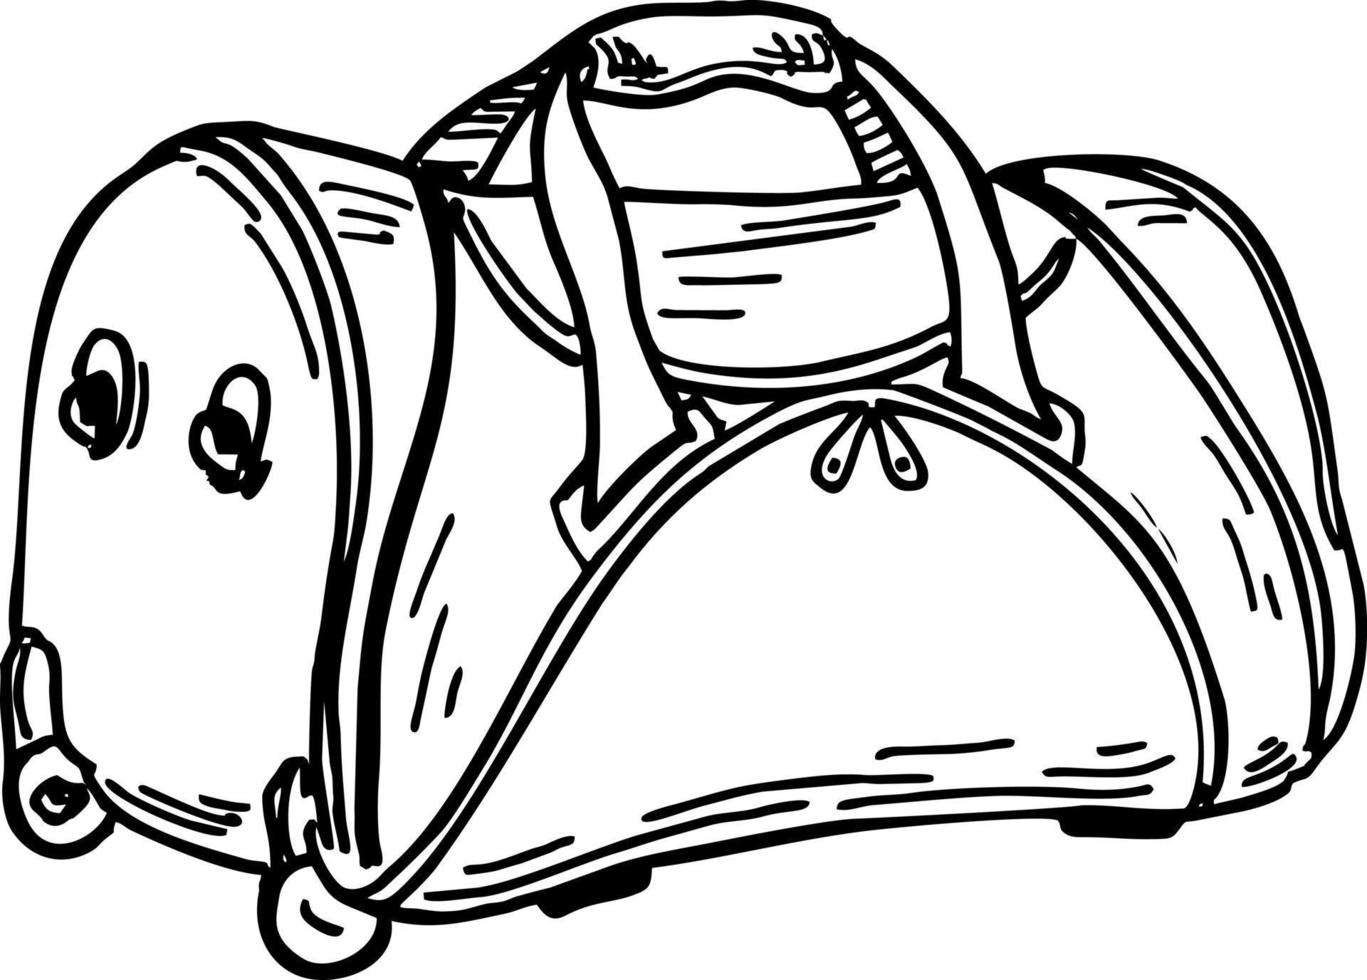 saco de viagem de esboço. Emblema de logotipo de contorno à mão livre de bolsa de mão esboçado em caneta de estilo retrô doodle. vetor